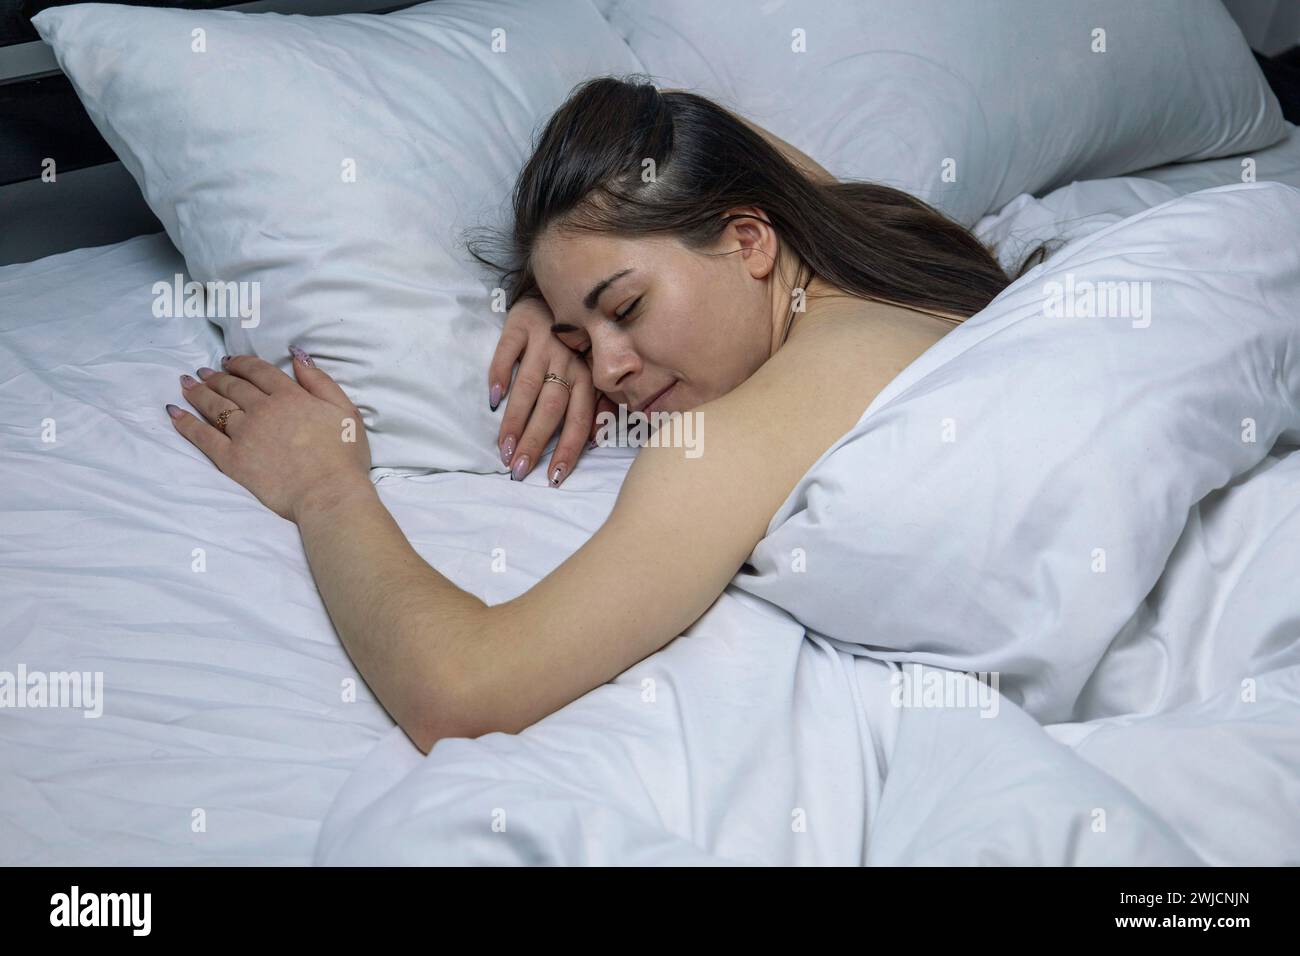 La ragazza dorme in un letto bianco. Foto Stock